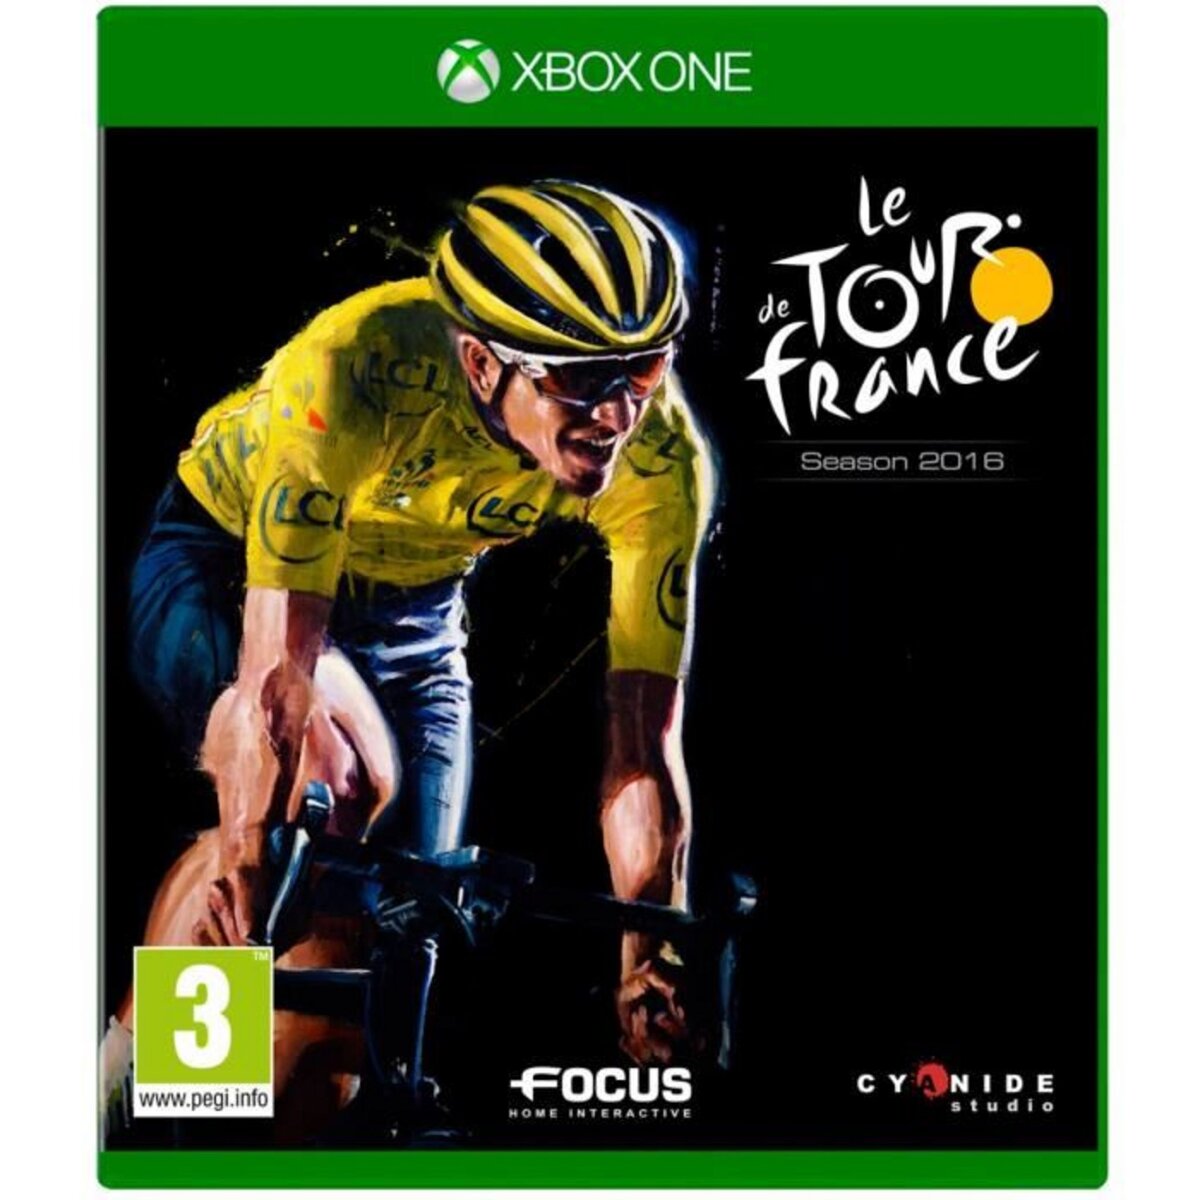 Tour de France Xbox One